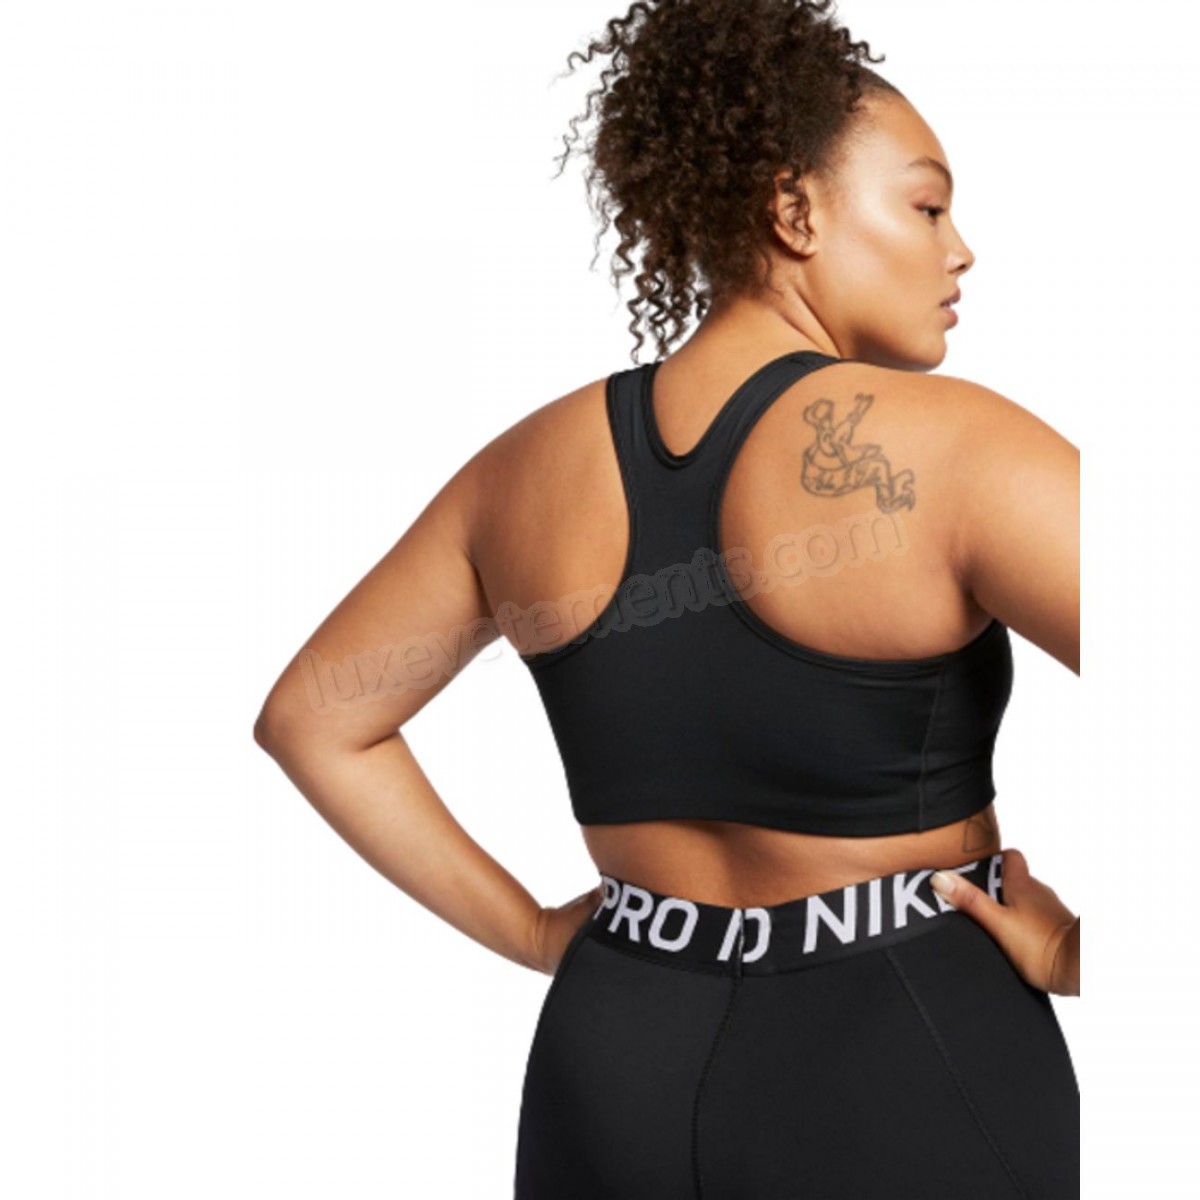 Nike-BRASSIERE Cardio Fitness femme NIKE Nike Swoosh (grande taille) Vente en ligne - -3